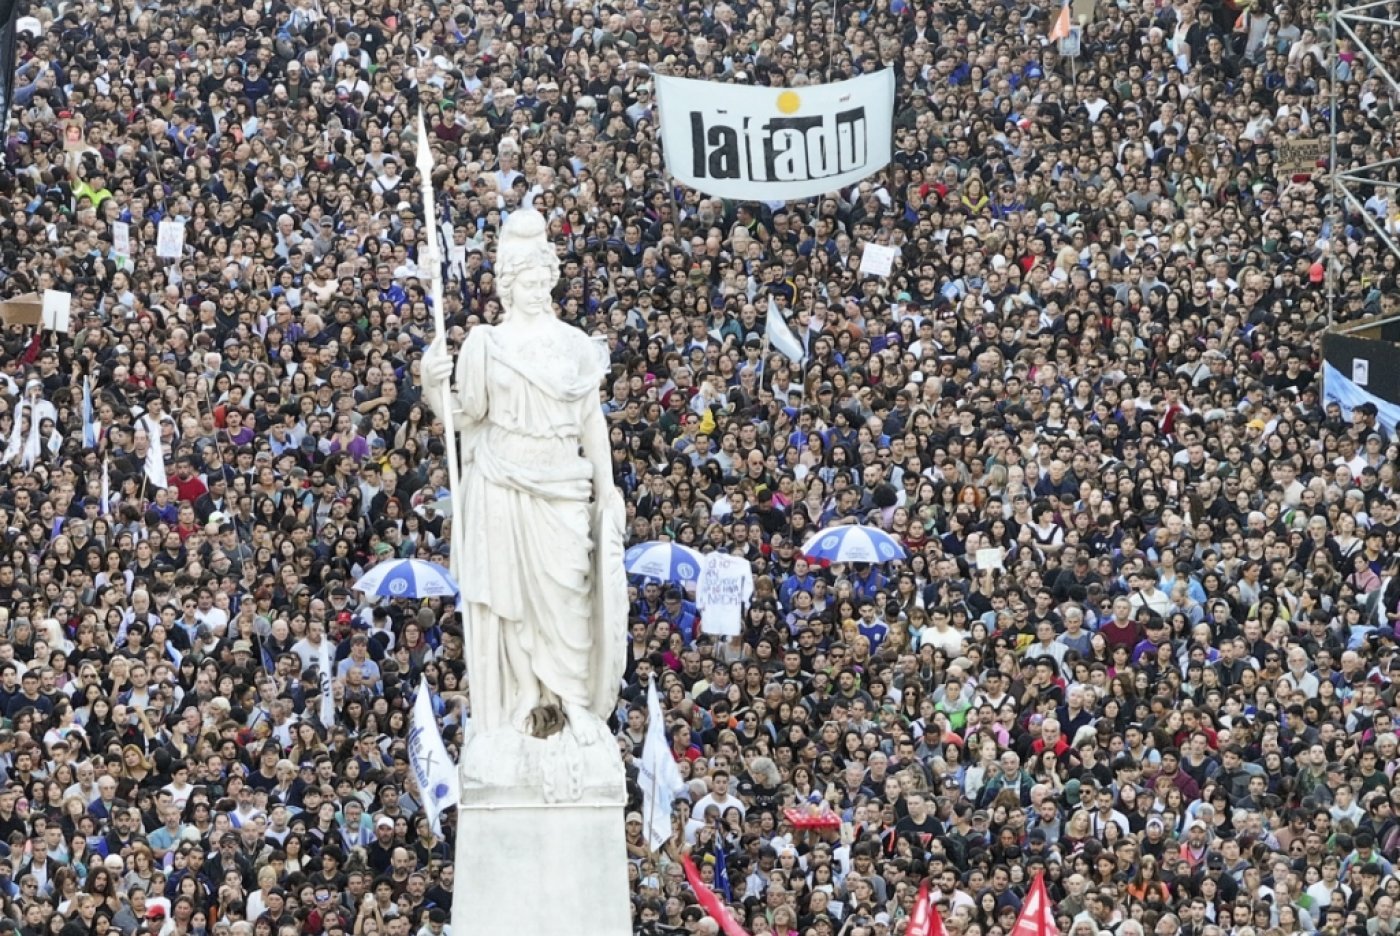 Entre 100'000 et 150'000 personnes ont protesté à Buenos Aires, selon une source policière. KEYSTONE